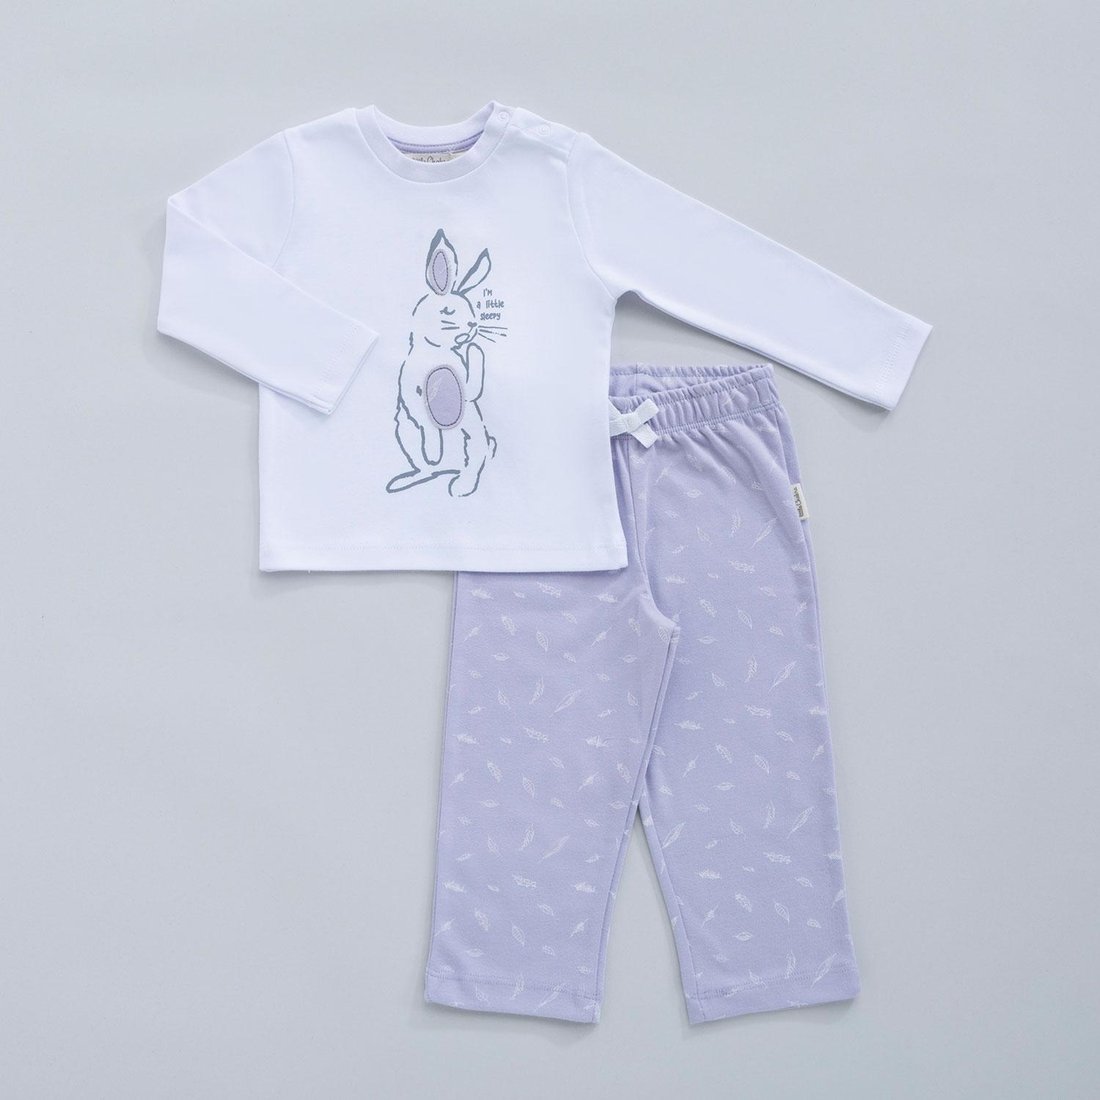 Детская пижама RABBIT 3-4 года, бело-сиреневого цвета